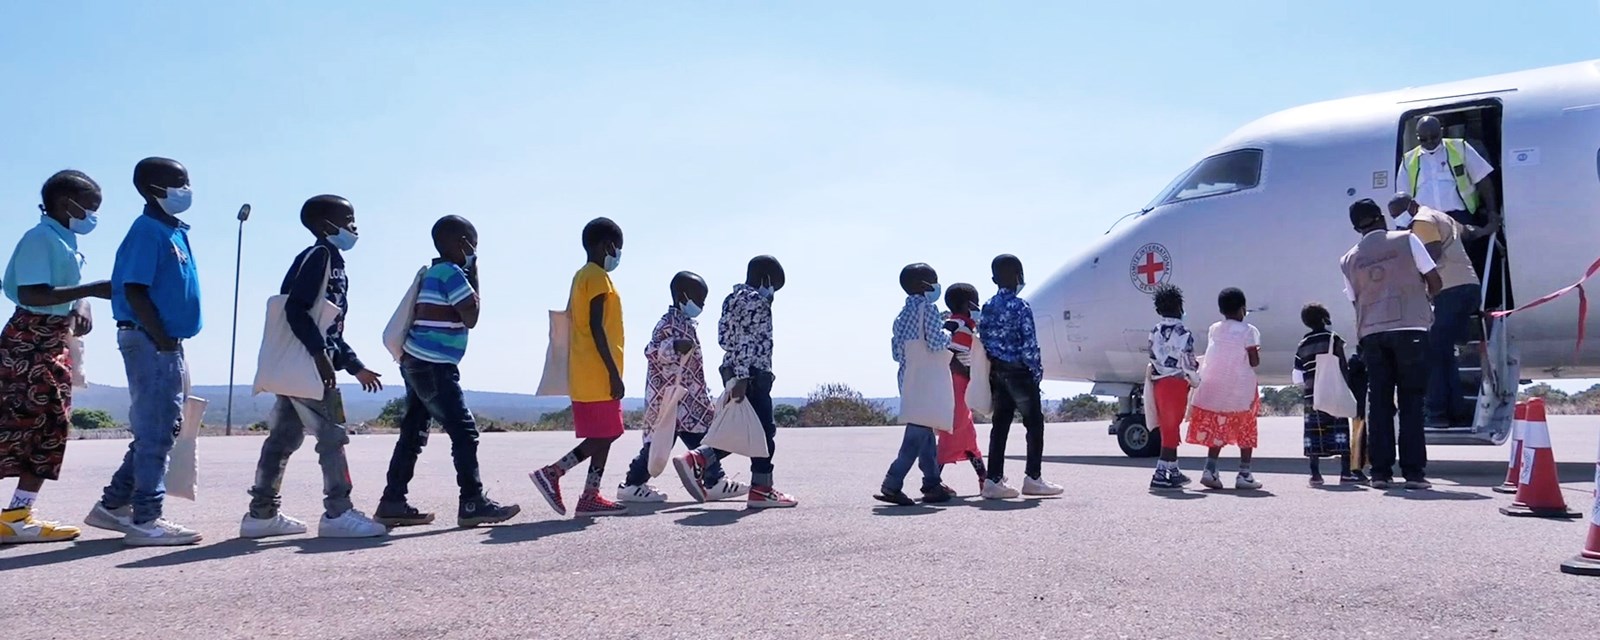 Barn på vei inn i Røde Kors-fly for å bli gjenforent med sine familier